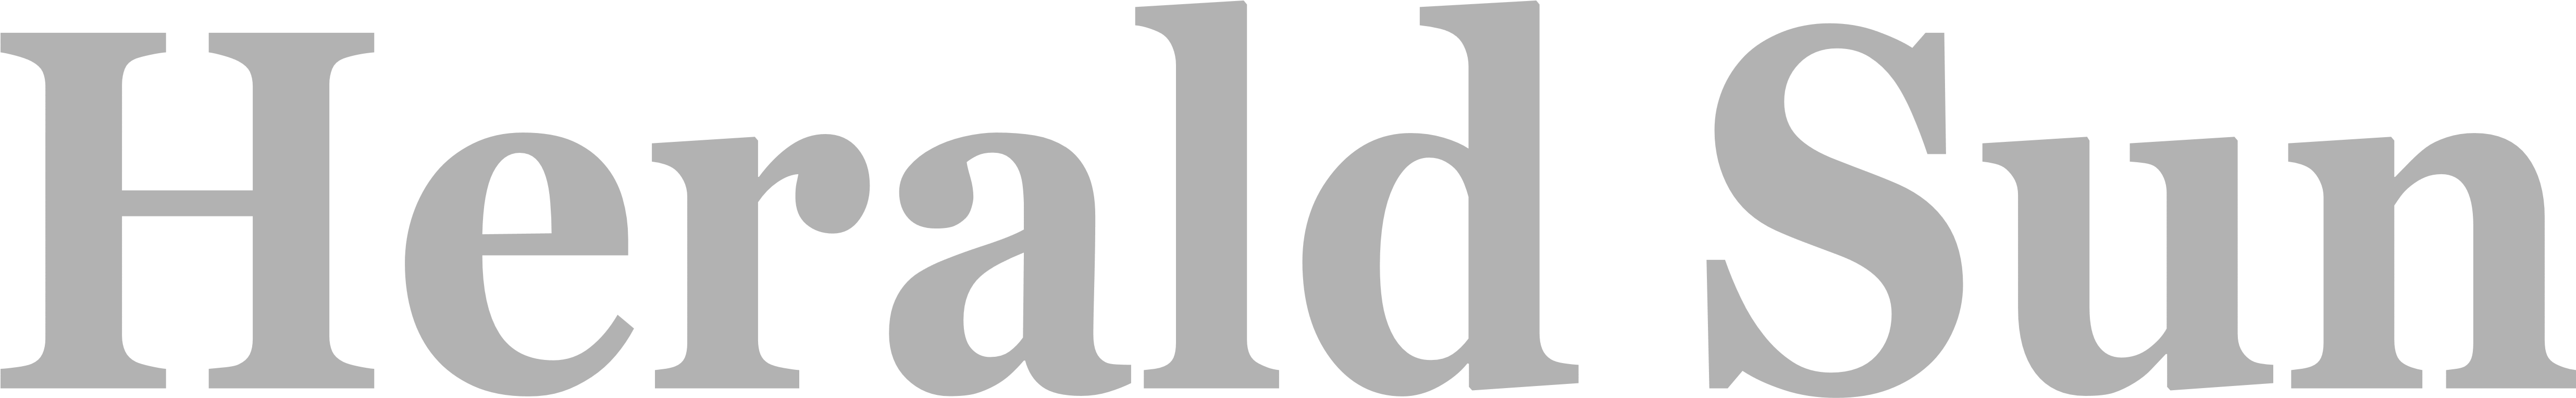 Grey Herald Sun Logo Logotype - Herald Sun Australia Logo (5000x812)